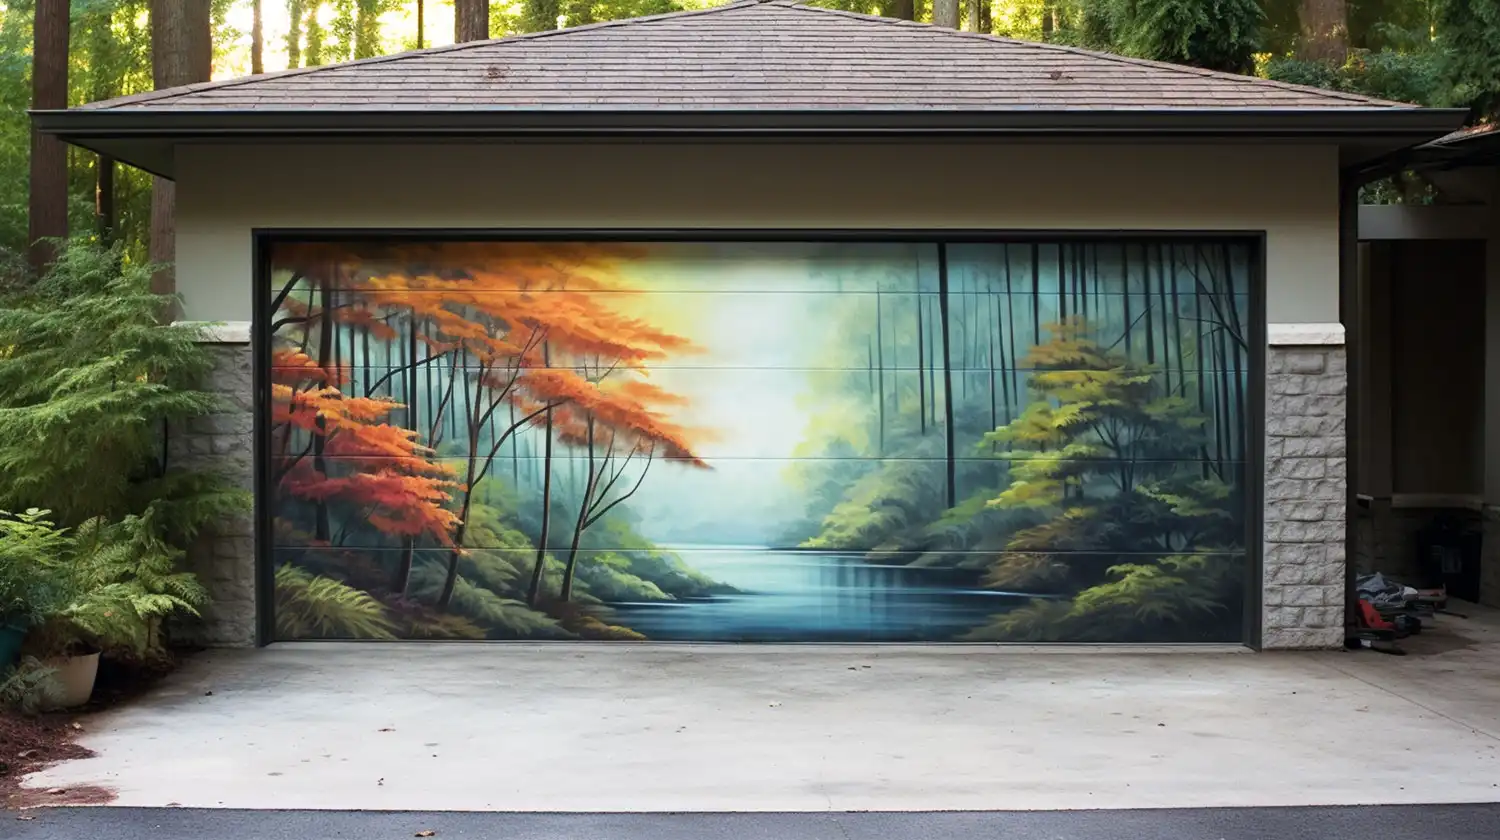 Painted Garage Door With Scenery